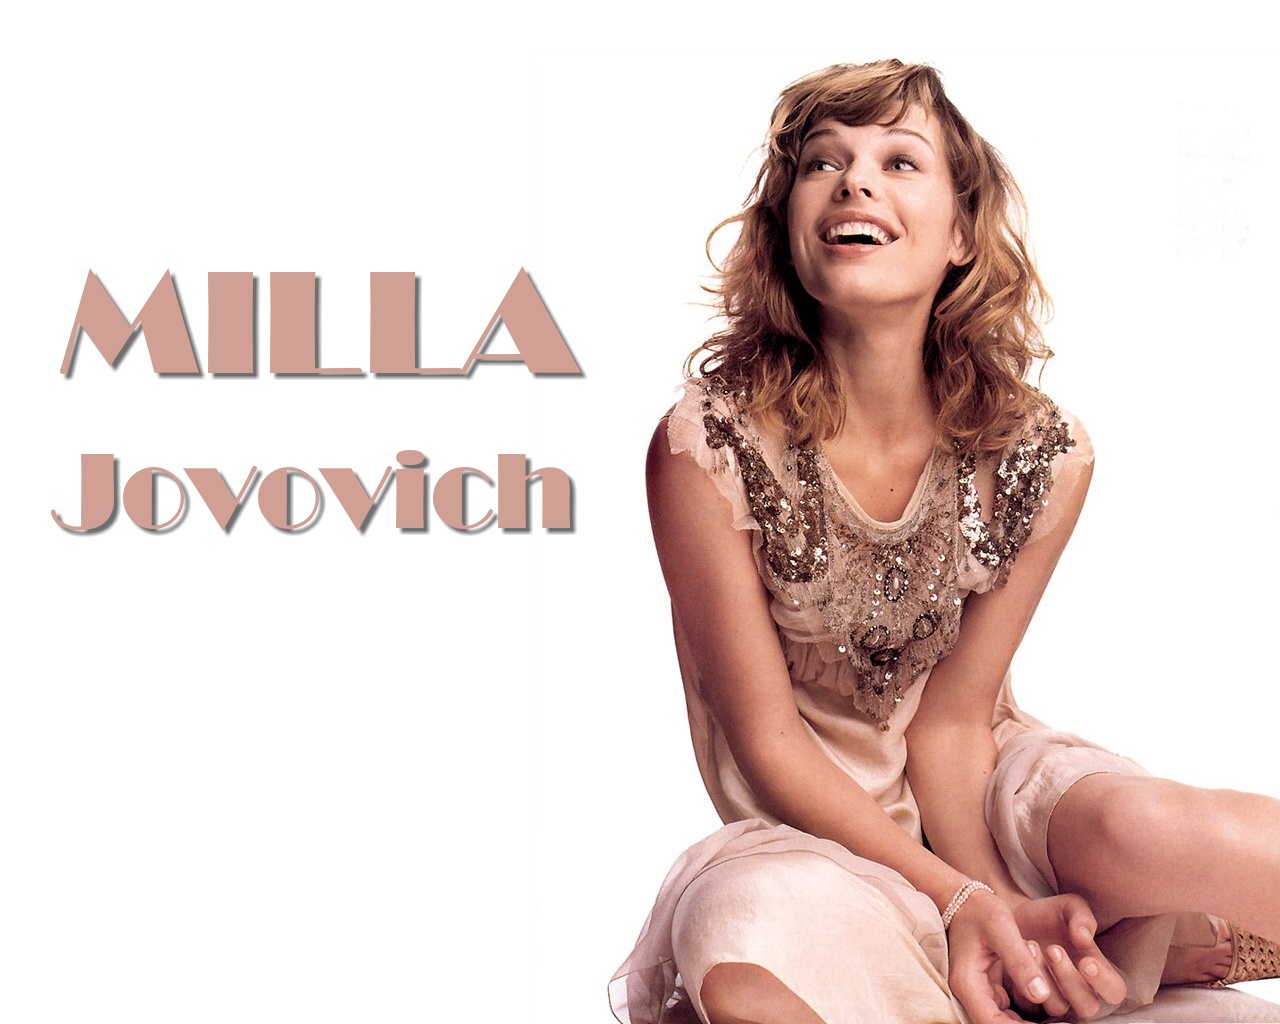 Milla jovovich 29